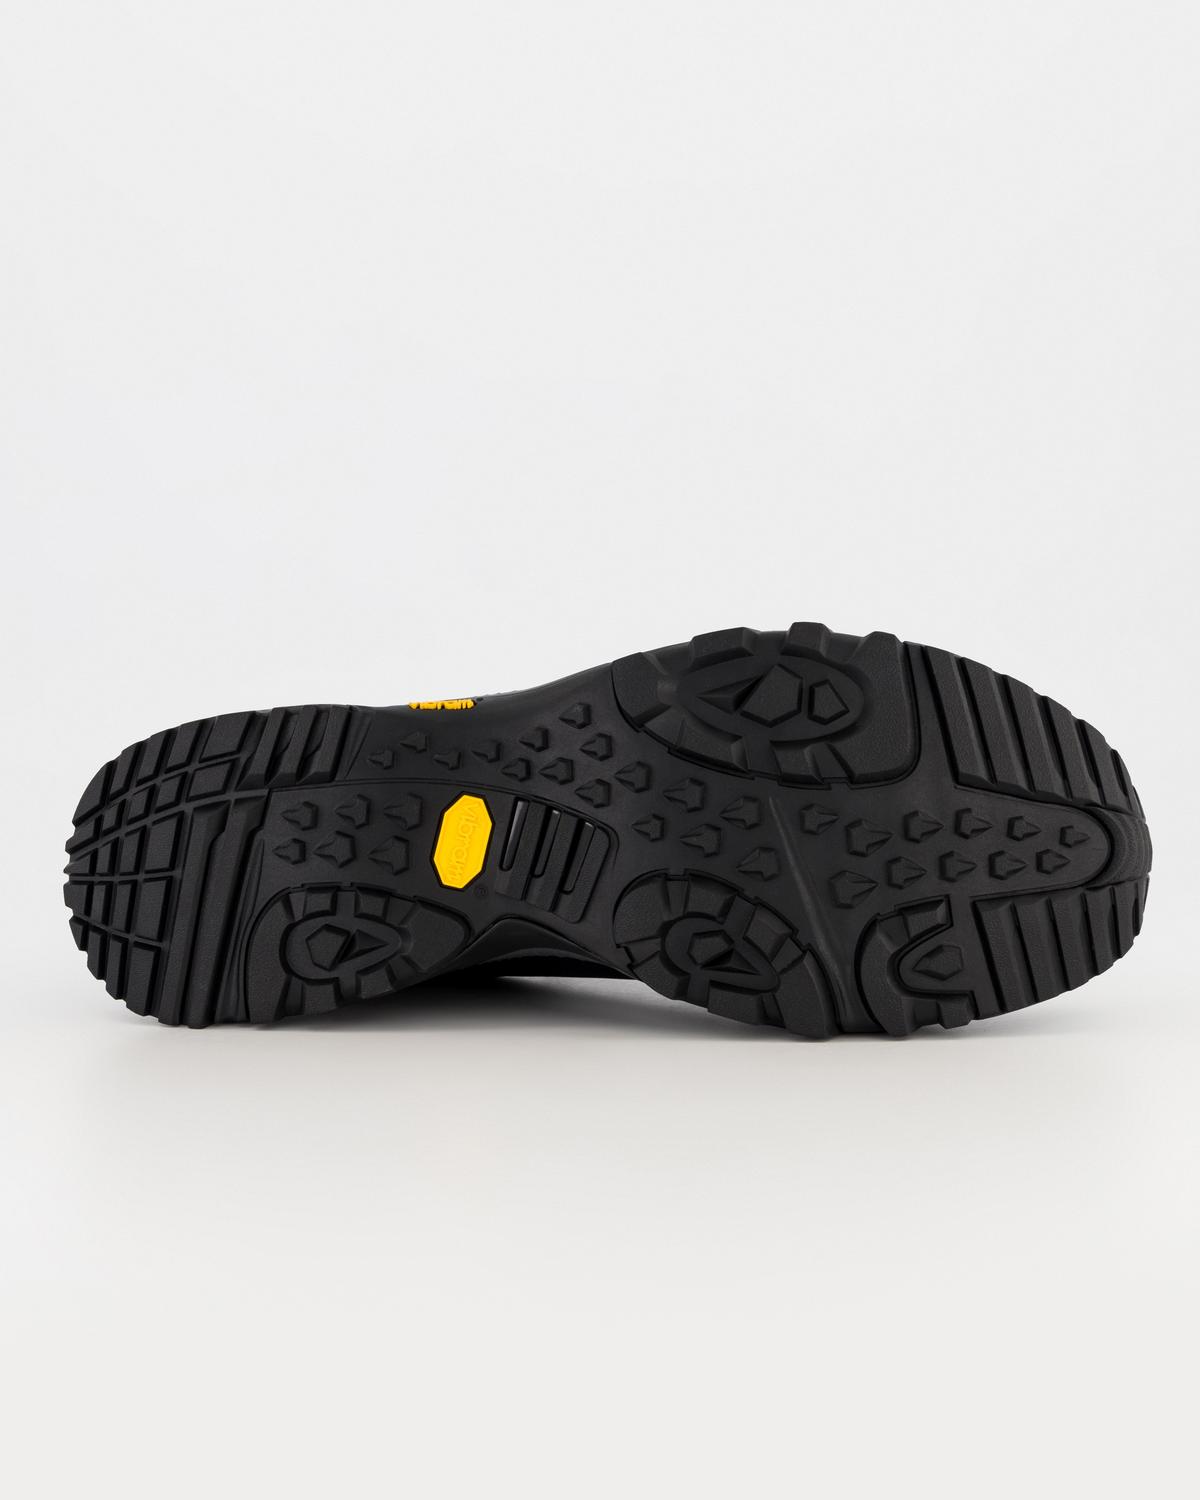 K-Way Men's Edge 4 Waterproof Hiking Shoes -  Black